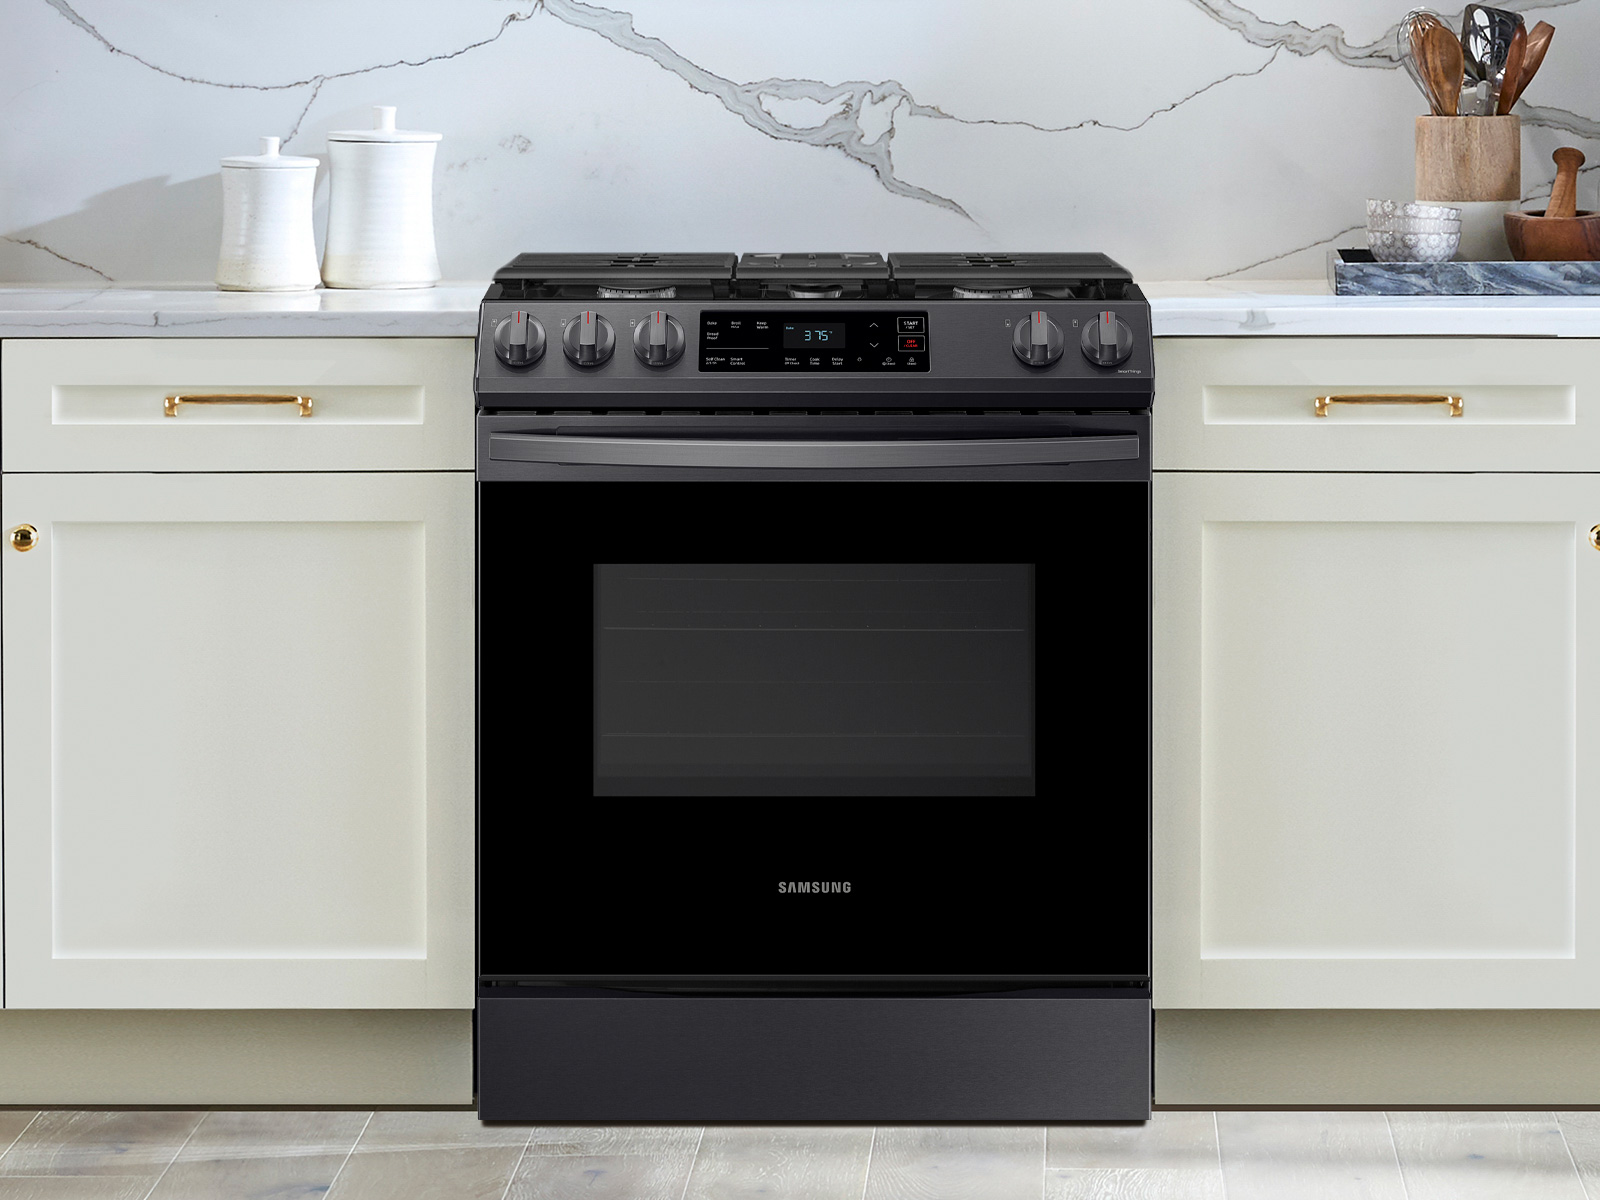 Best kitchen deals: Get Instant brand kitchen appliances up to 31